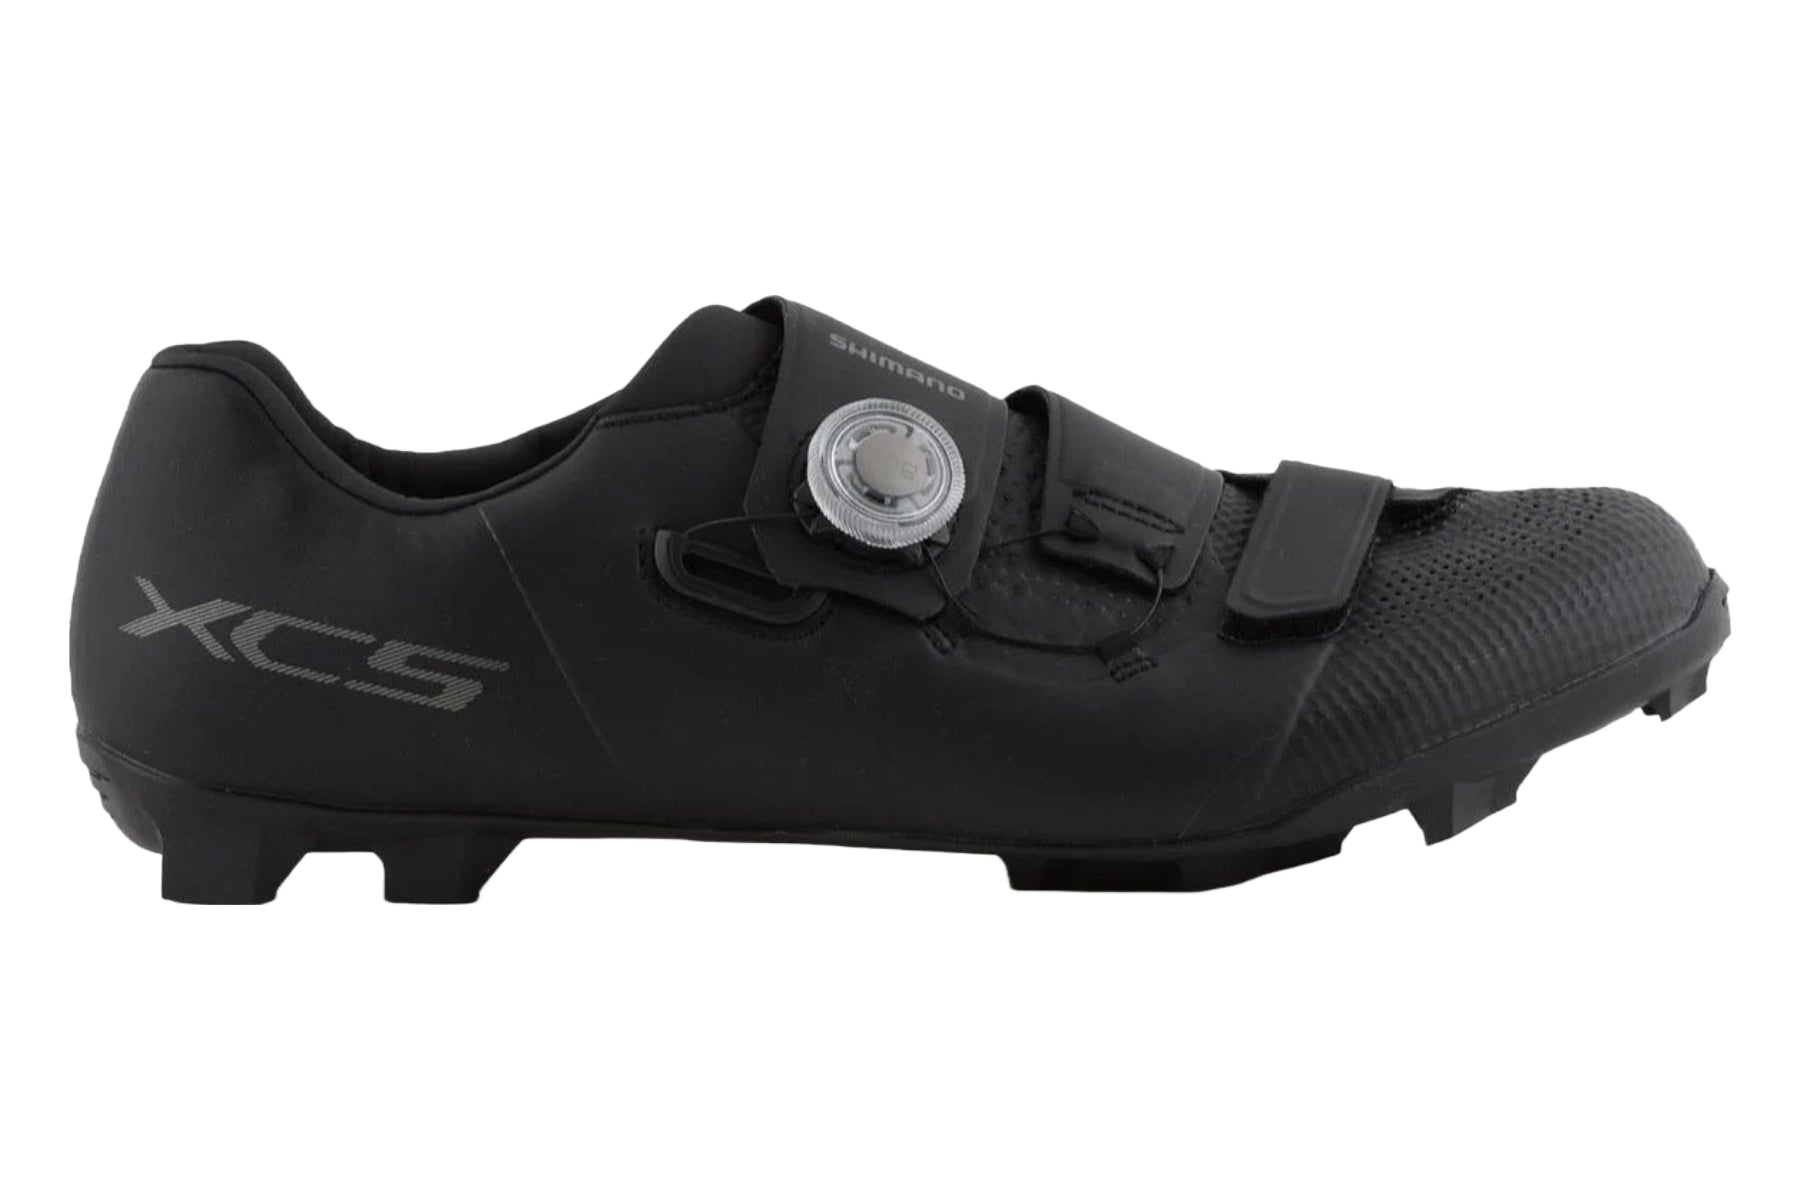 Photos - Cycling Shoes Shimano XC5 Mountain Shoes - Black - 41 ESHXC502MCL01S41000 